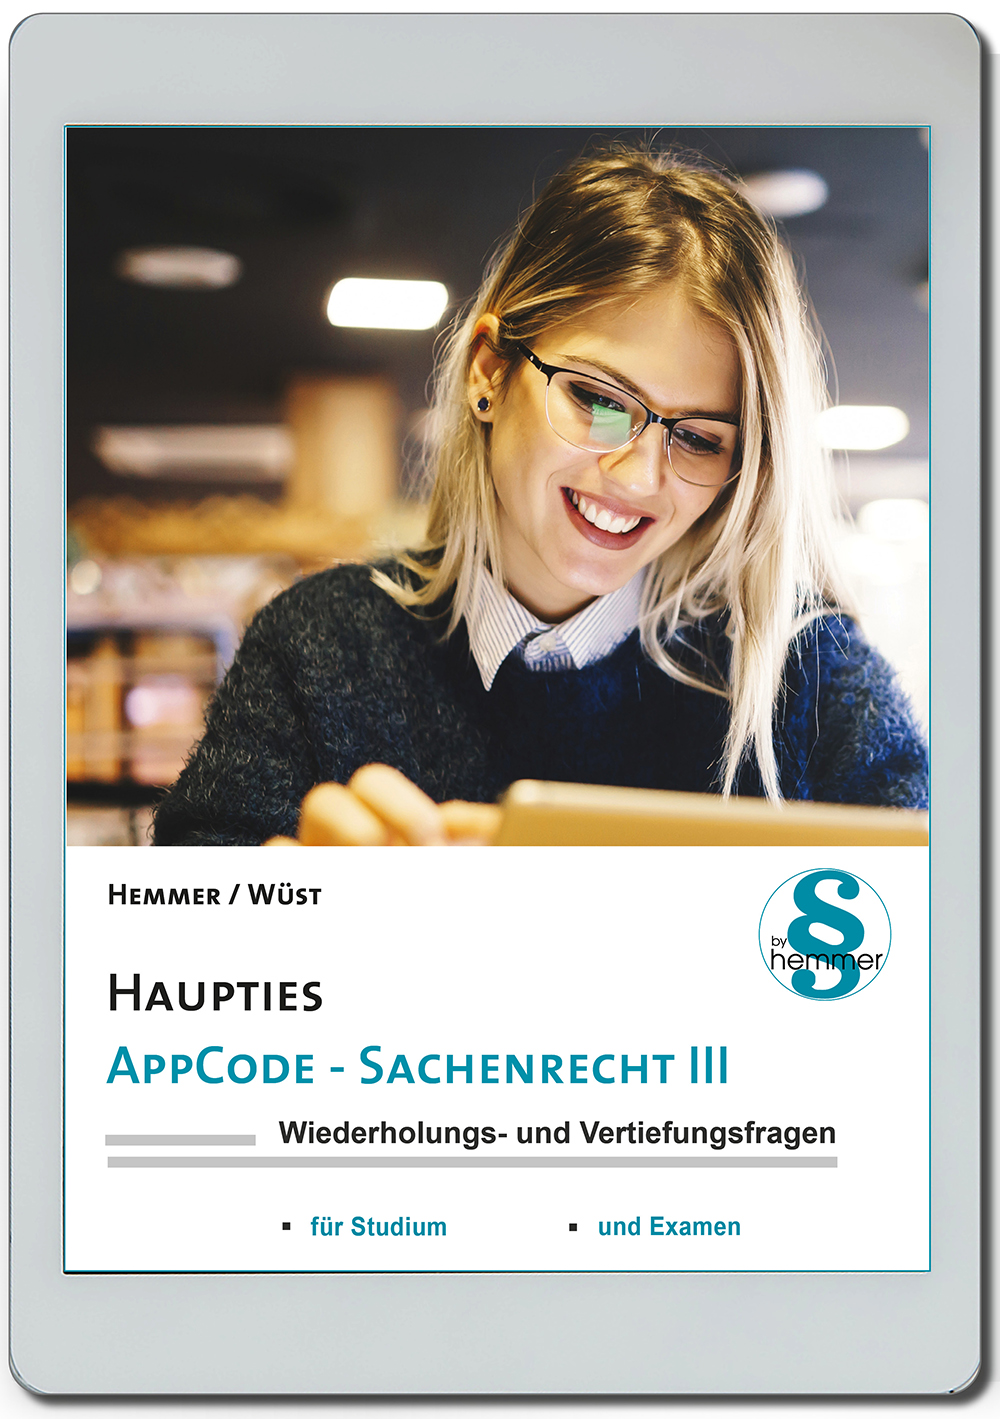 AppCode - haupties - Sachenrecht III